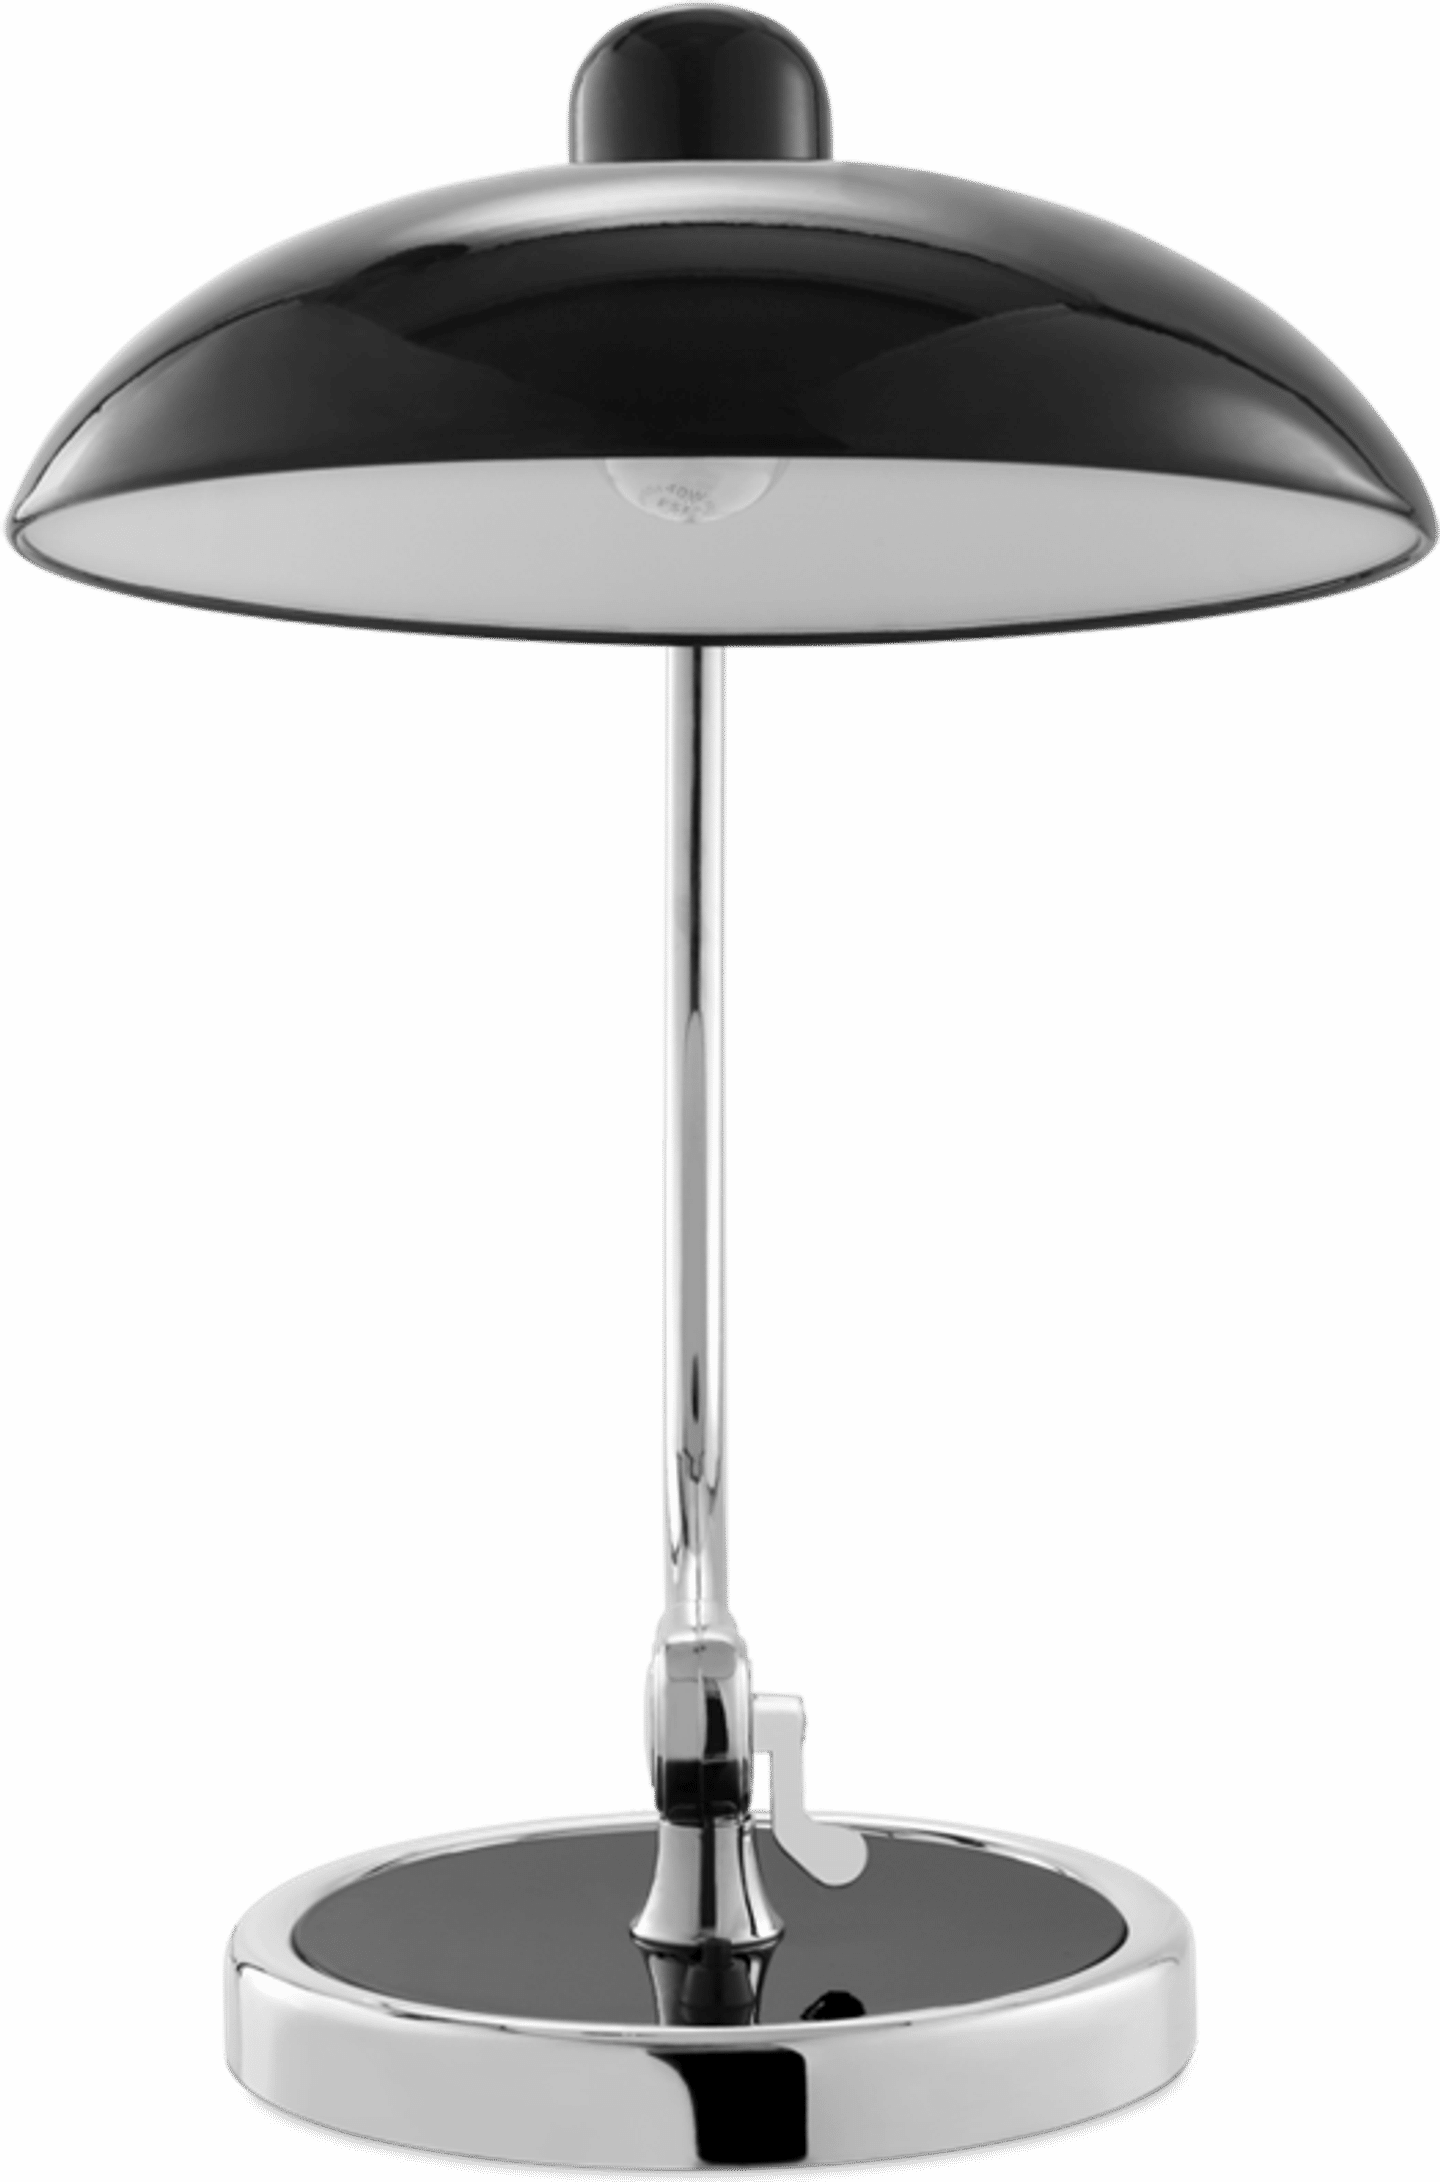 Kaiser Idell Style Bordlampe Black image.